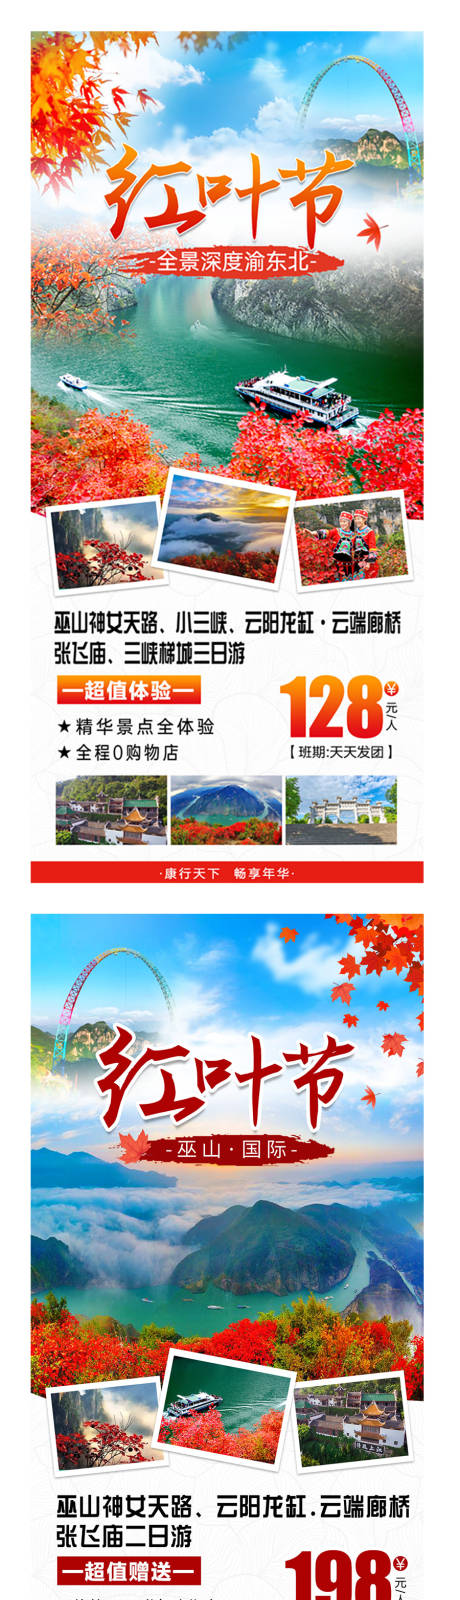 三峡红叶节宣传海报